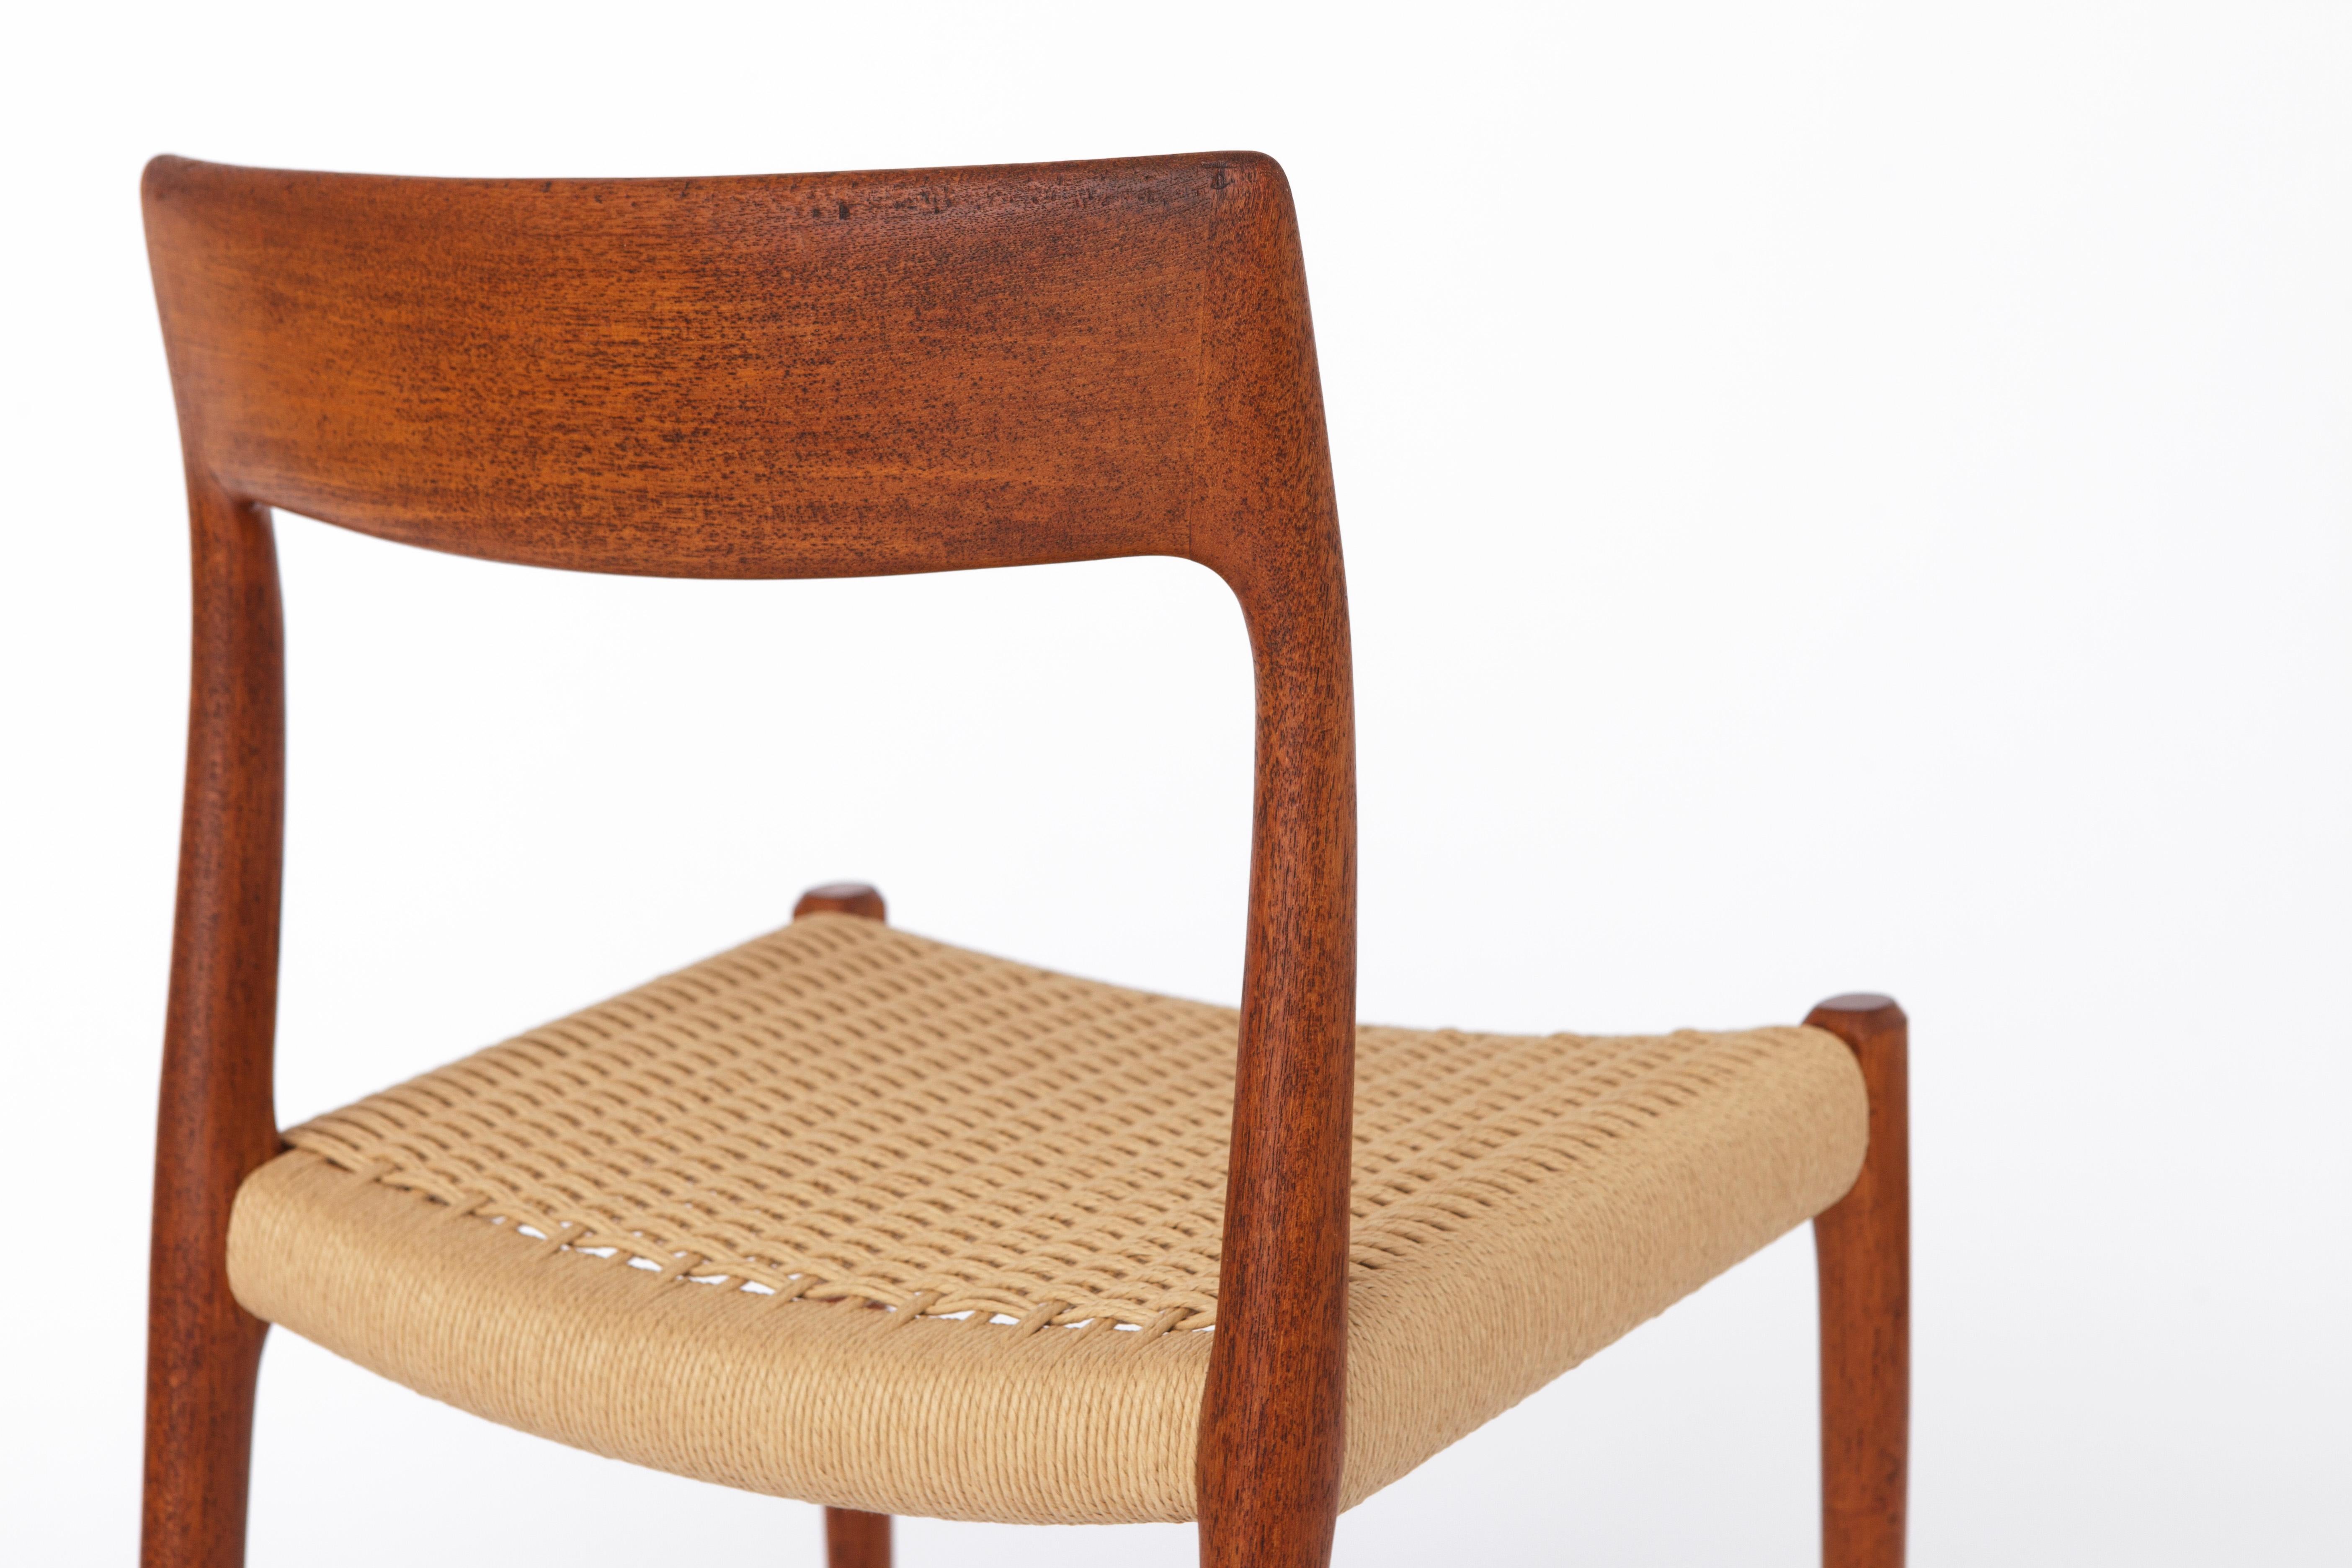 Mid-Century Modern 1 of 3 Niels Moller Chairs, model 77, Teak, 1950s Vintage